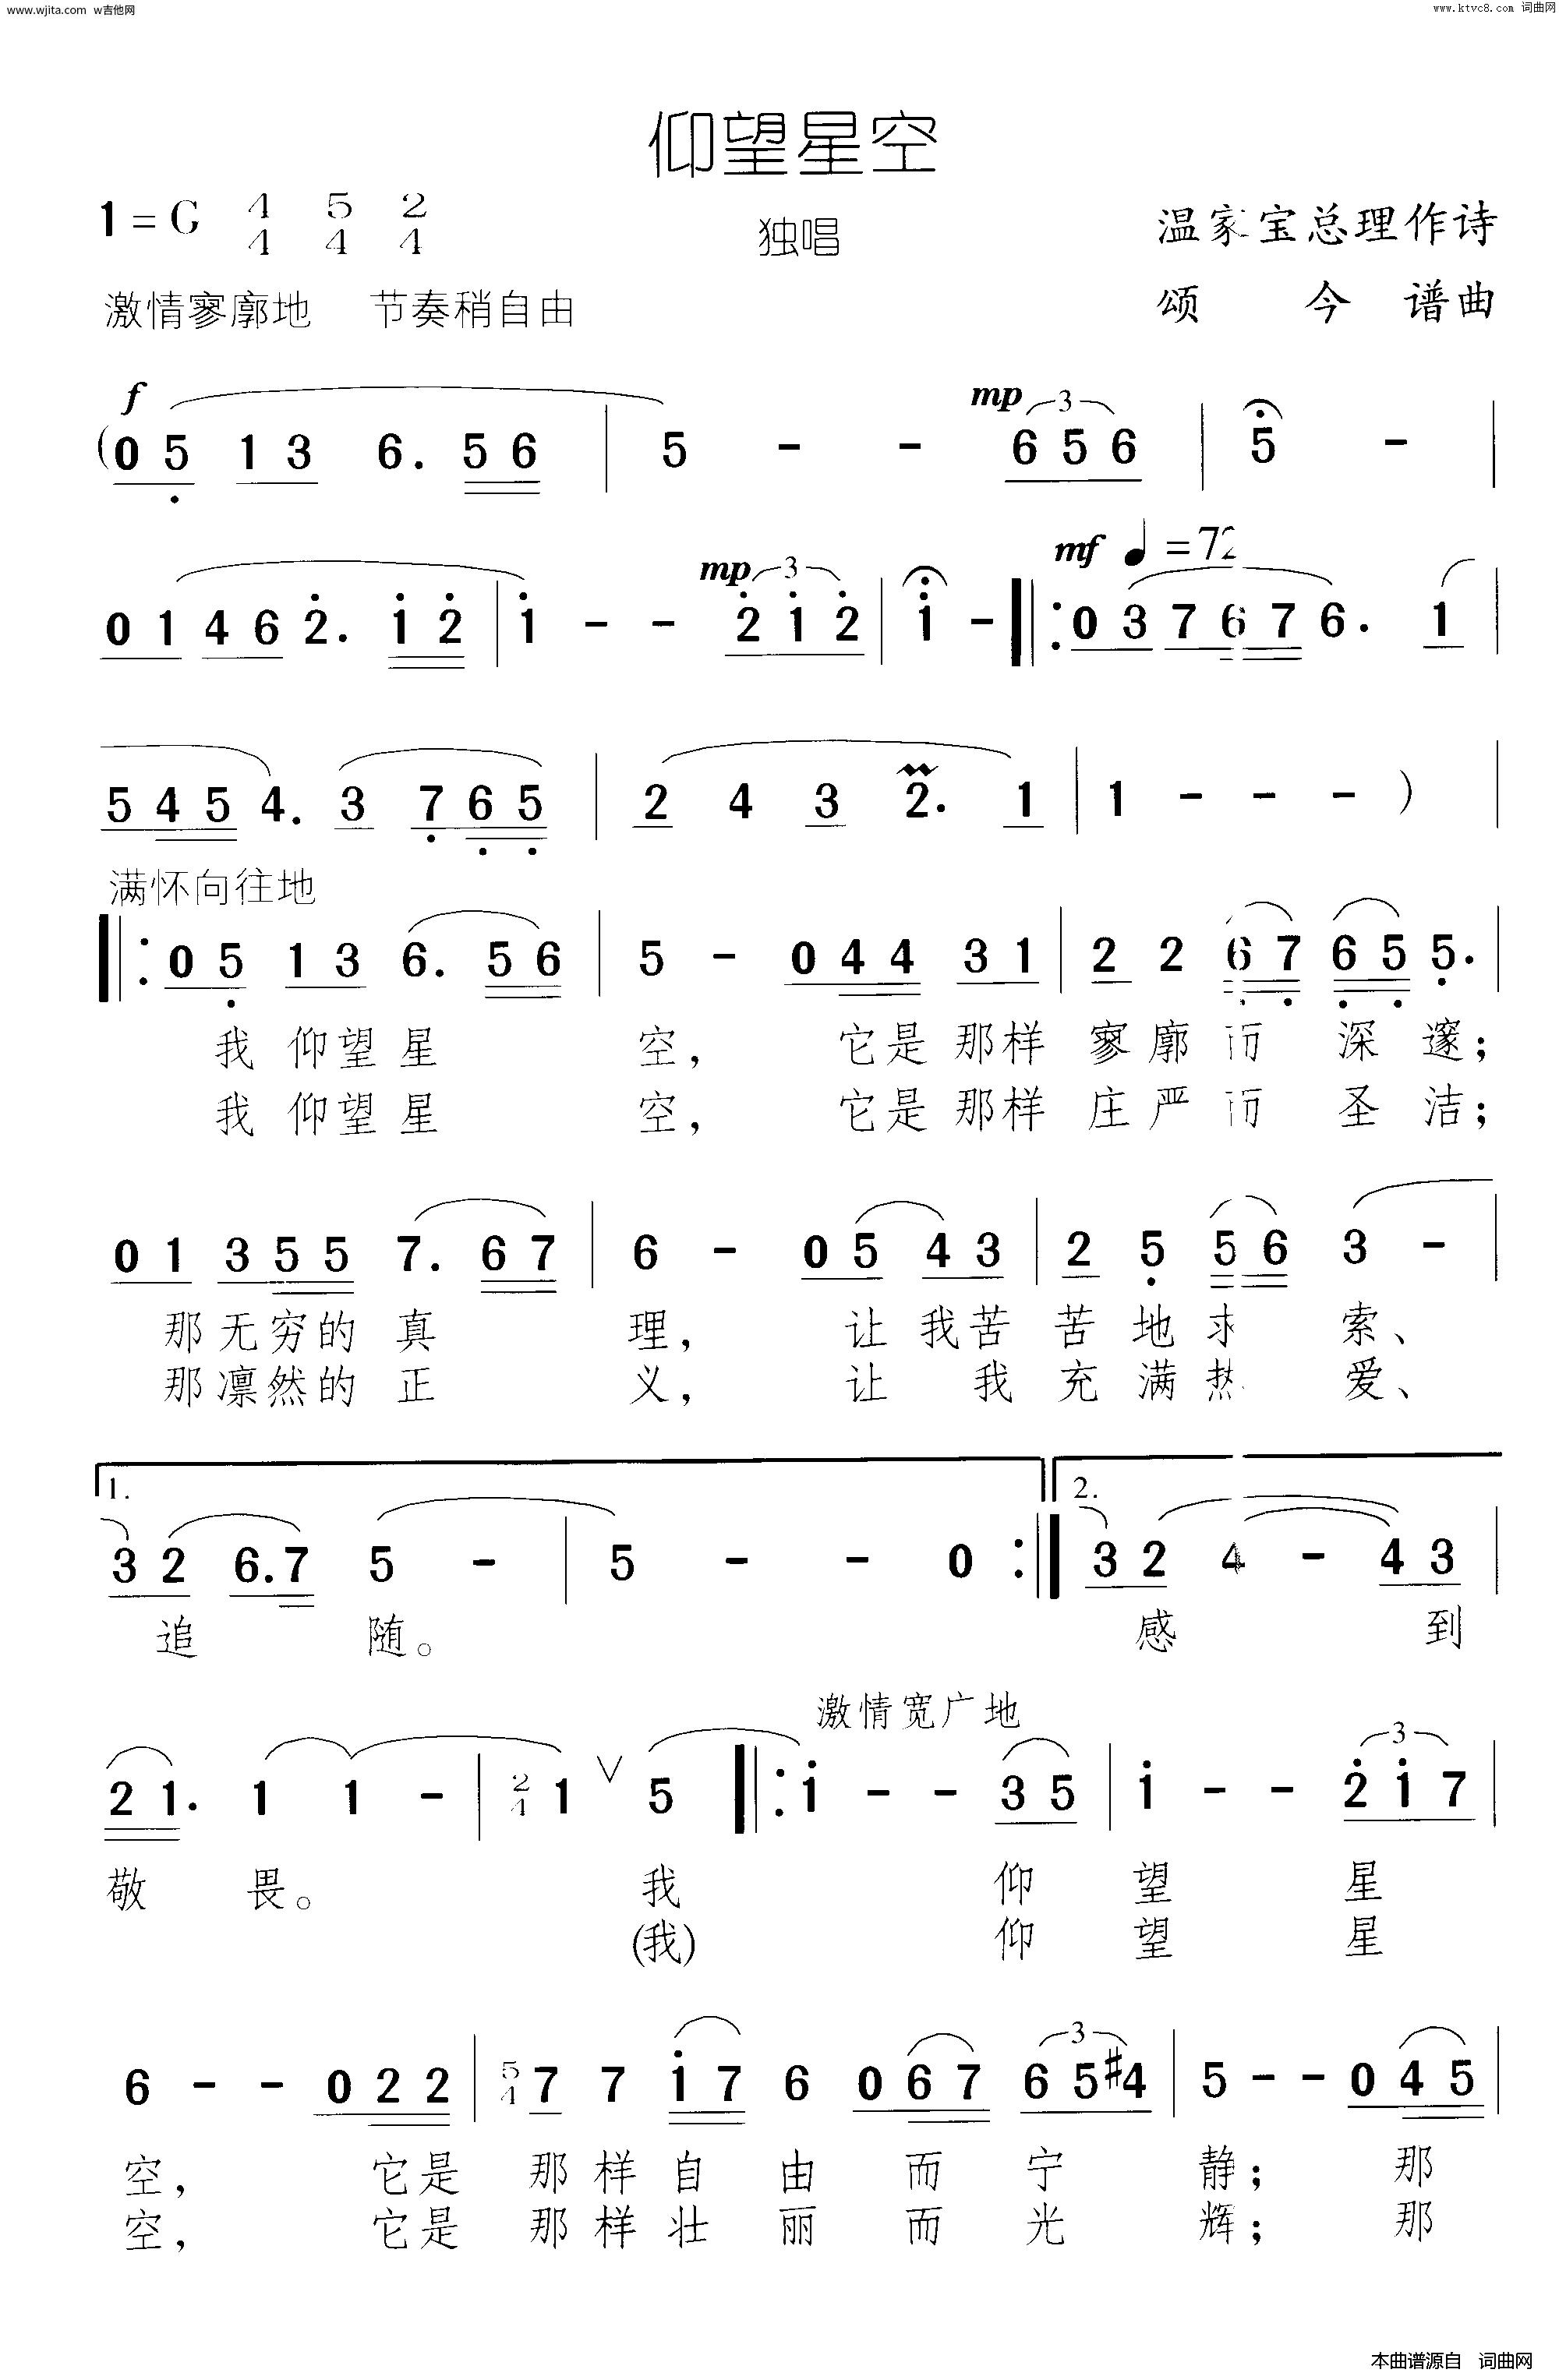 仰望星空-张杰五线谱预览1-钢琴谱文件（五线谱、双手简谱、数字谱、Midi、PDF）免费下载